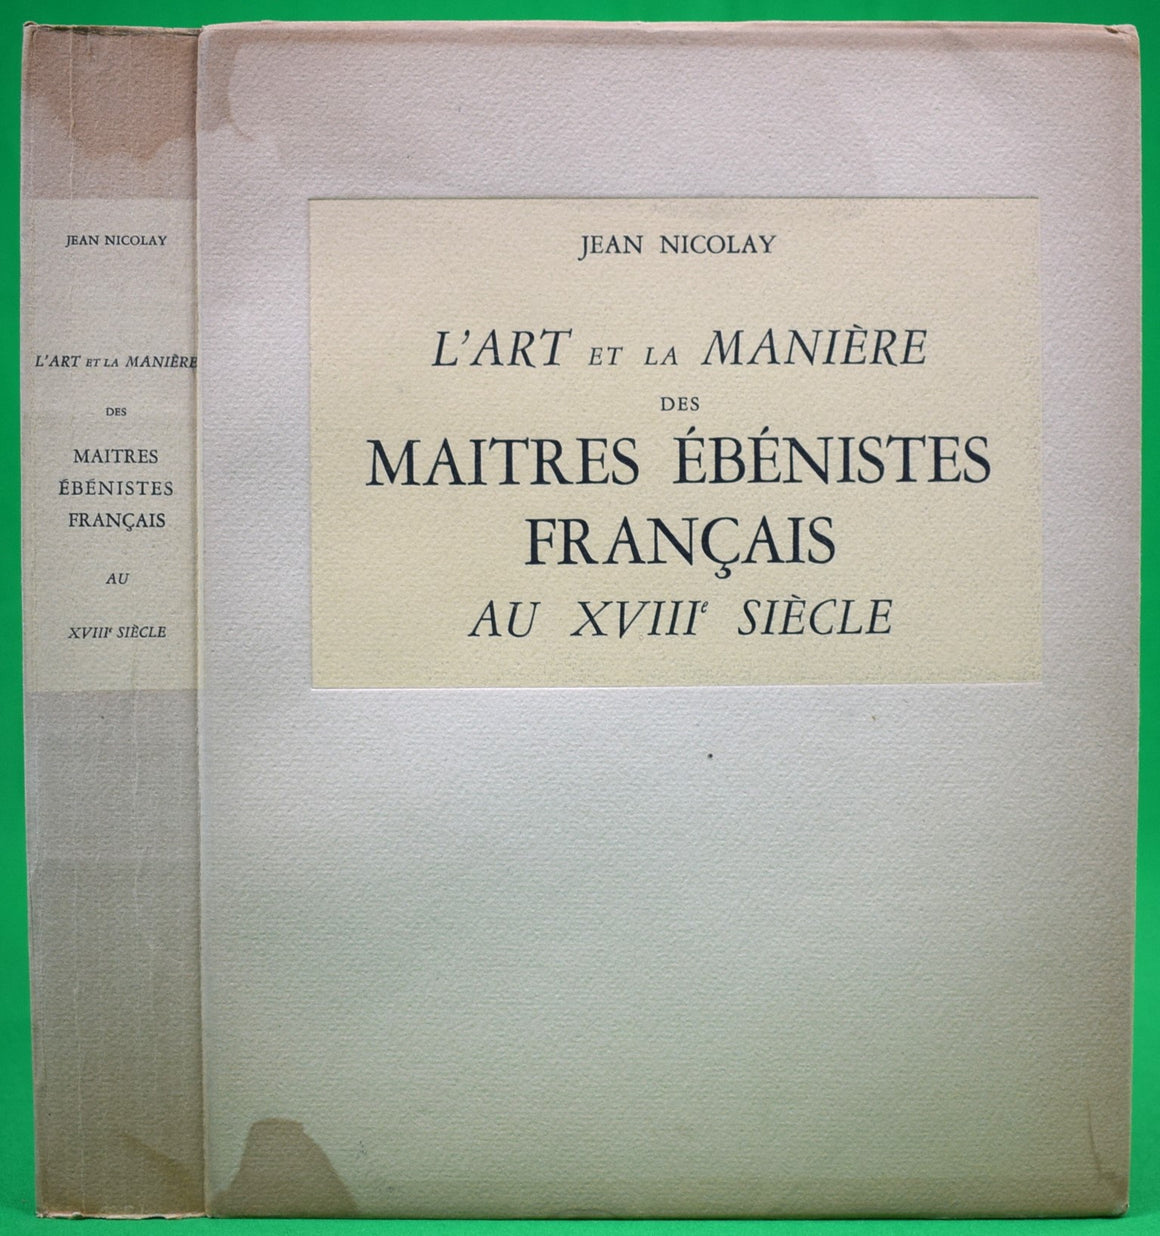 "L'Art Et La Manière Des Maitres Ébénistes Français" 1956 NICOLAY, Jean